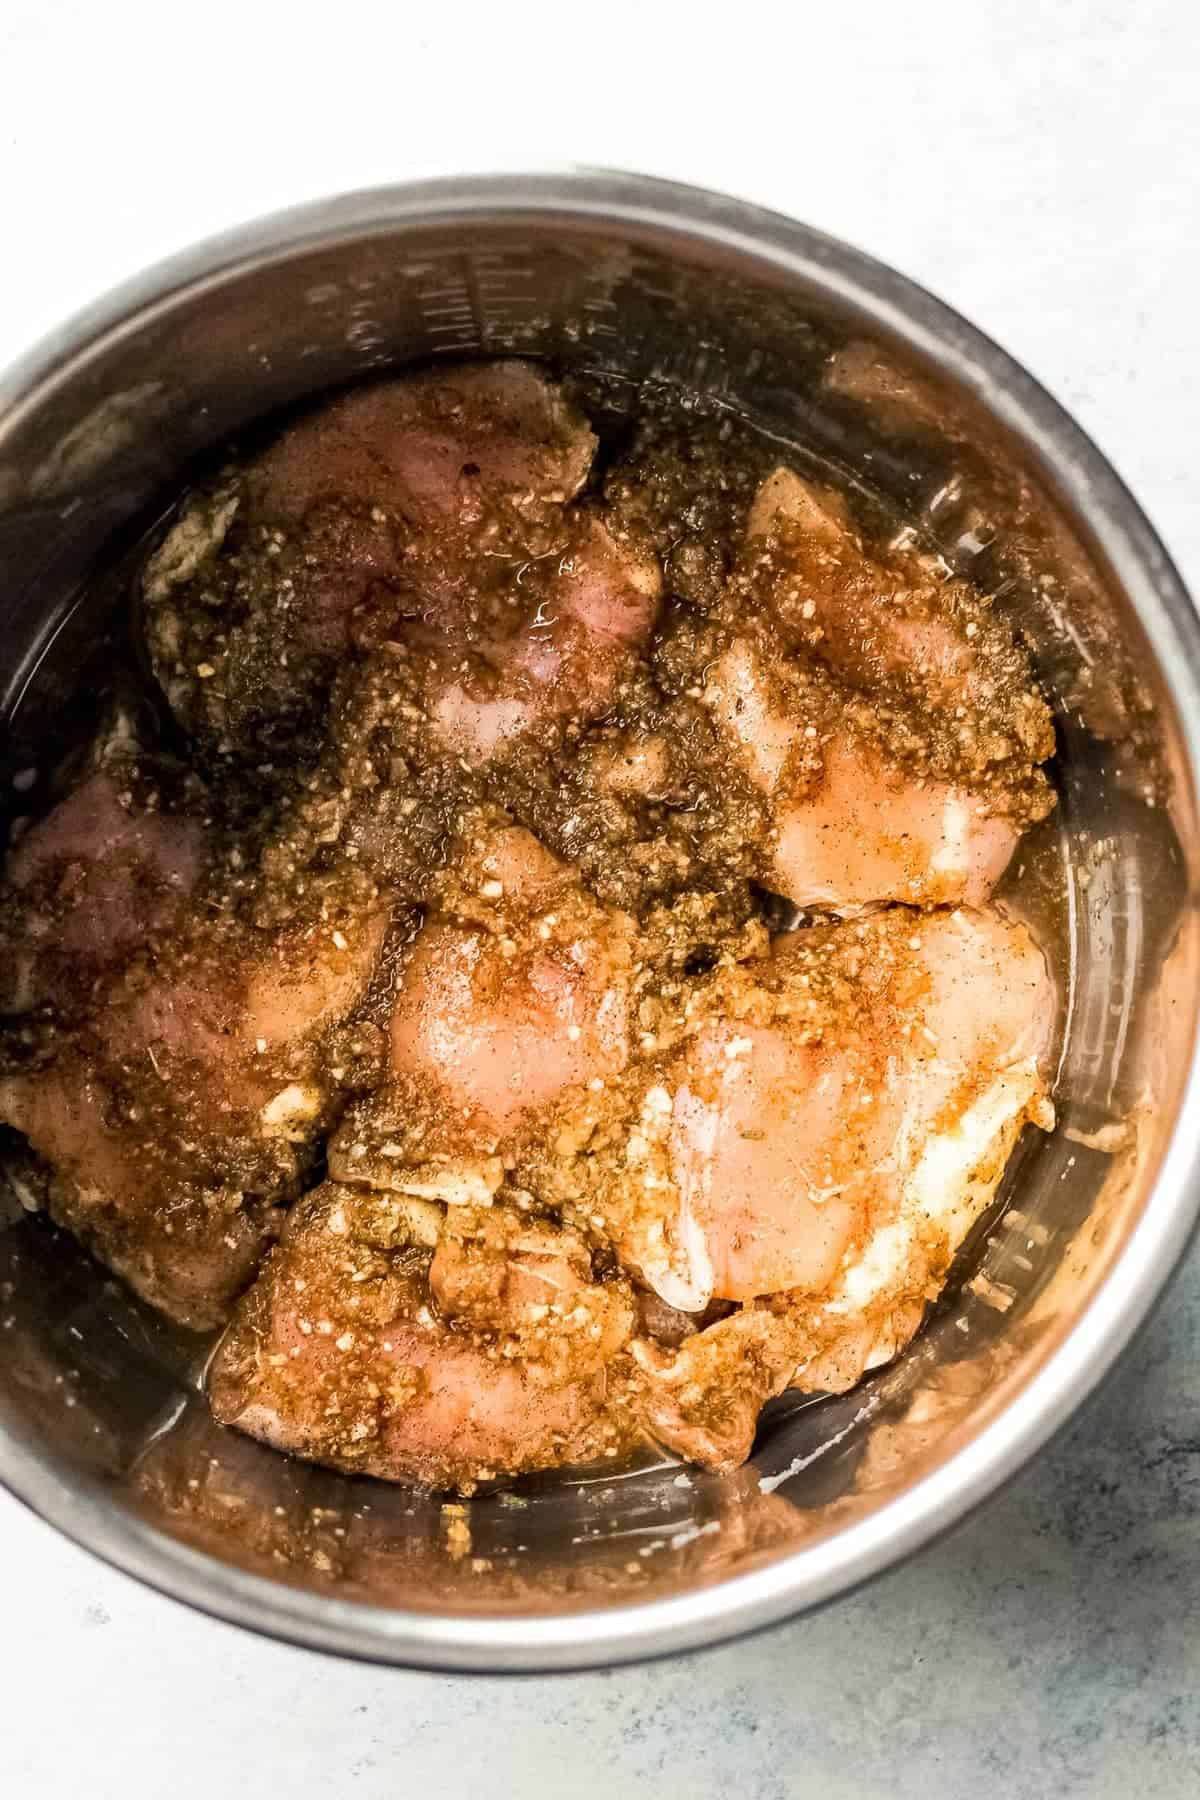 Chicken marinating in the jerk seasoning